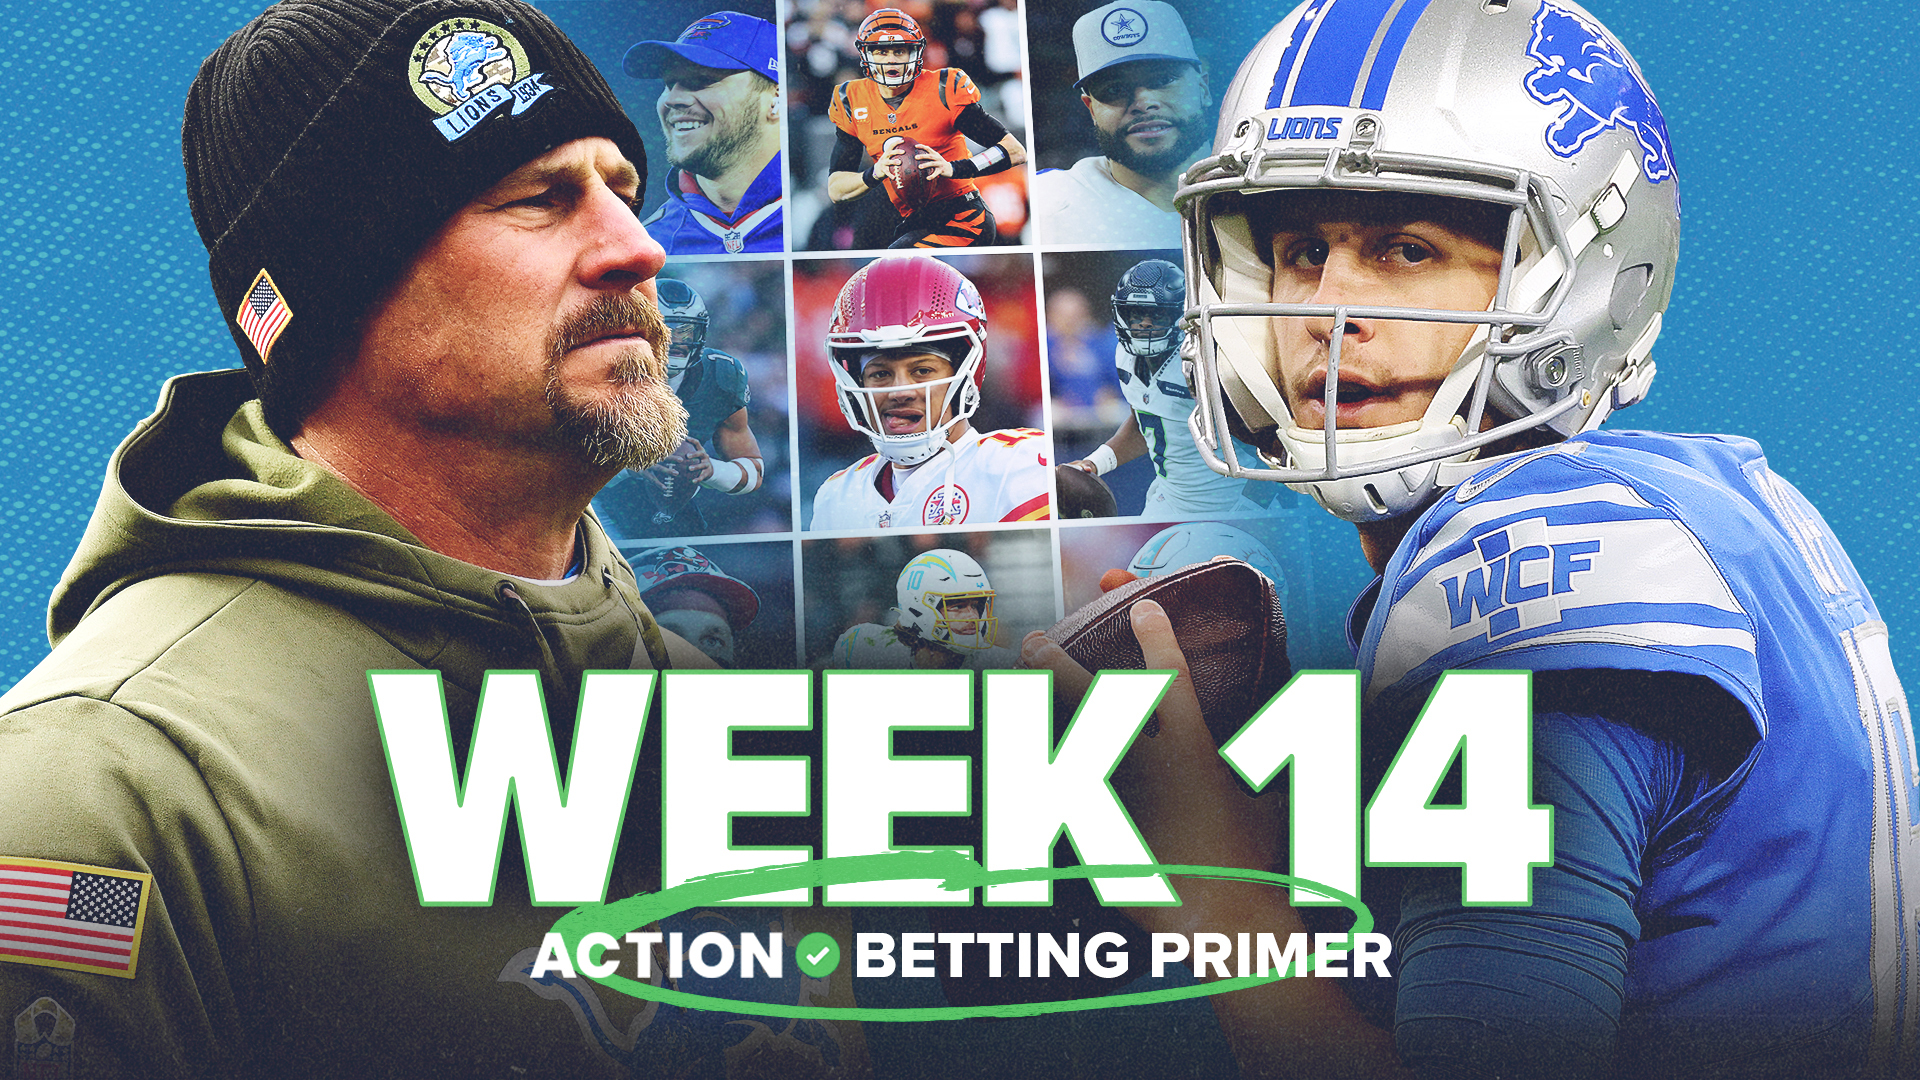 Week 14: NFL Betting Picks Based on Historical Data